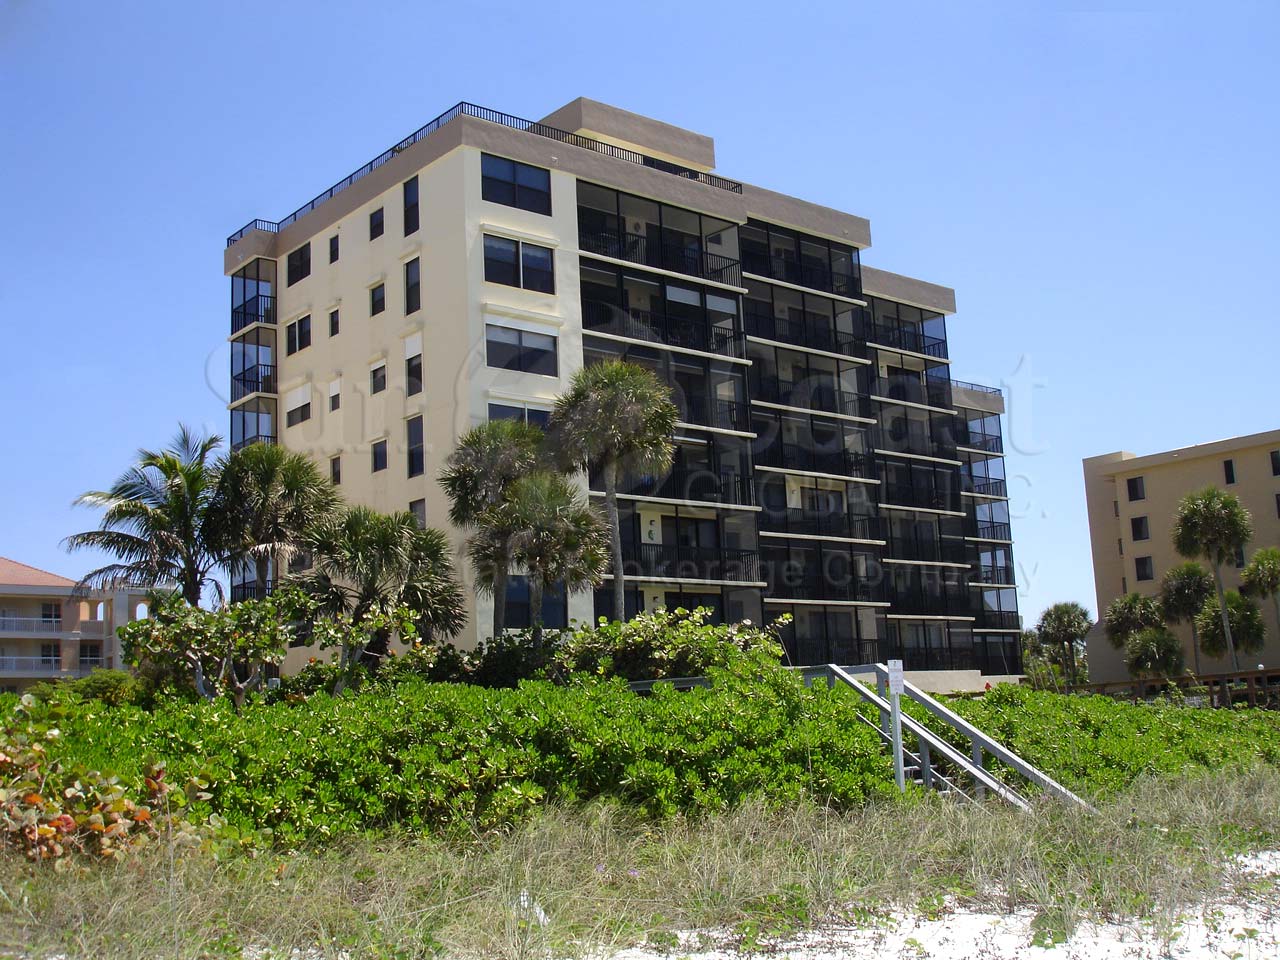 Seawatch Condominium Building